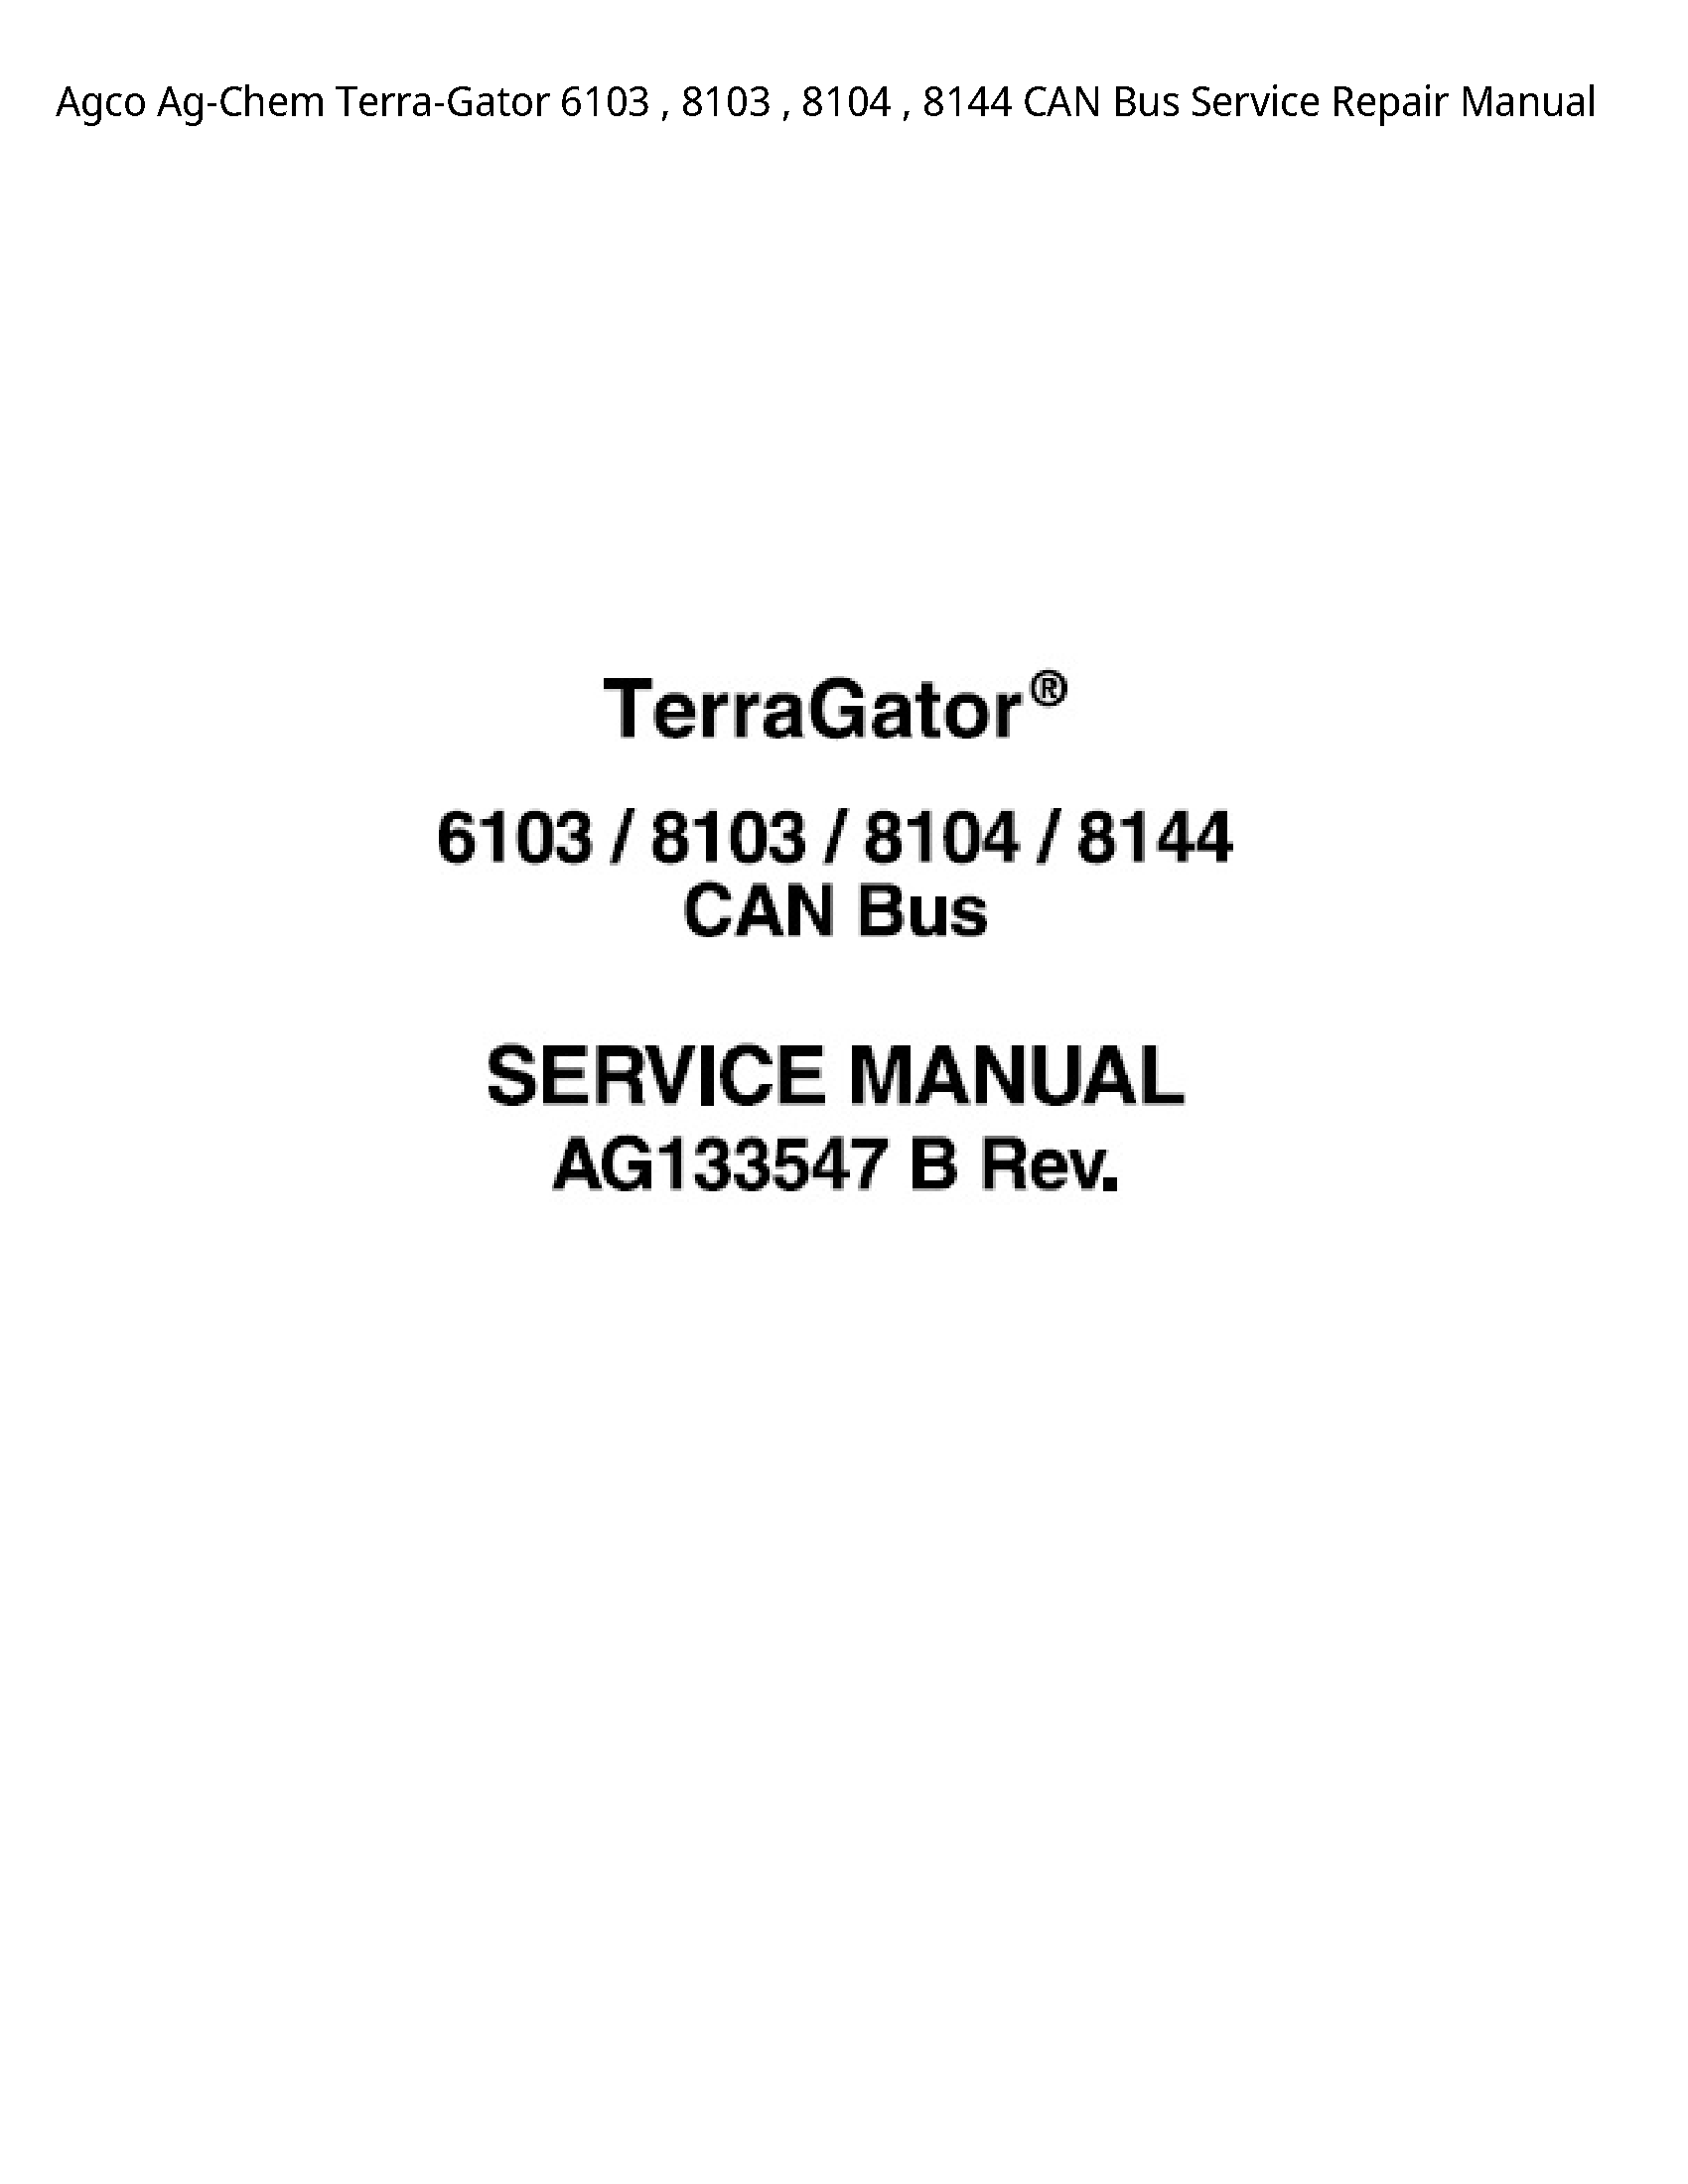 AGCO 6103 Ag-Chem Terra-Gator CAN Bus manual